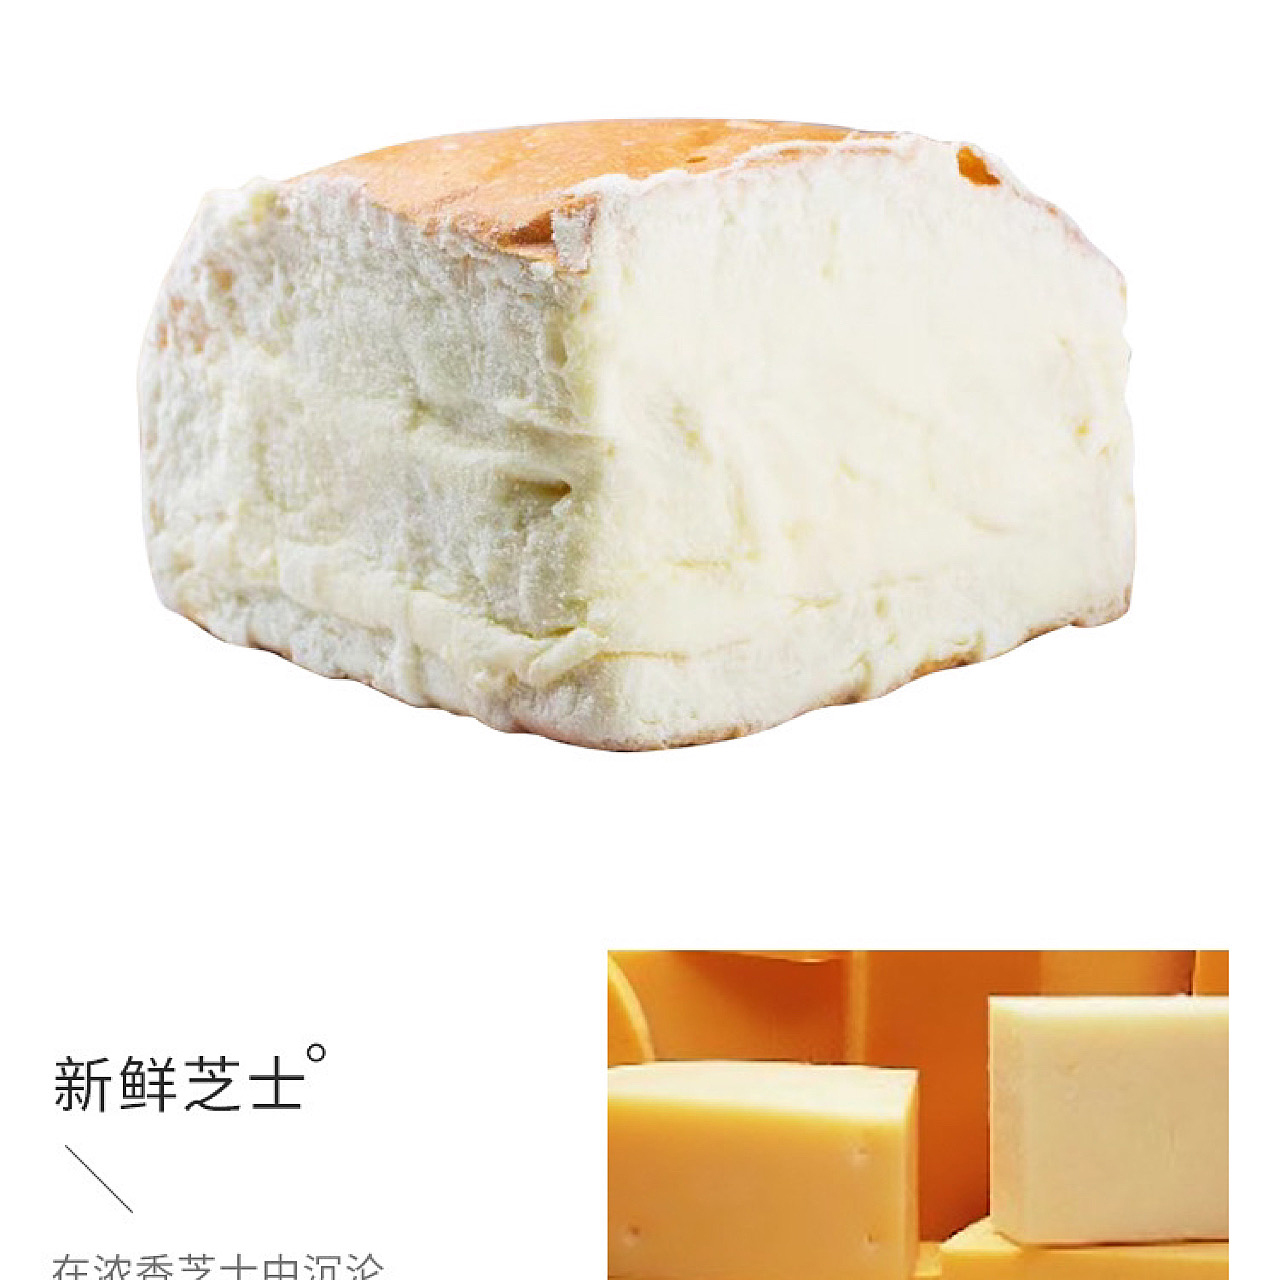 奶酪包奶酪面包夹心乳酪包零食特产原味芝士网红小吃